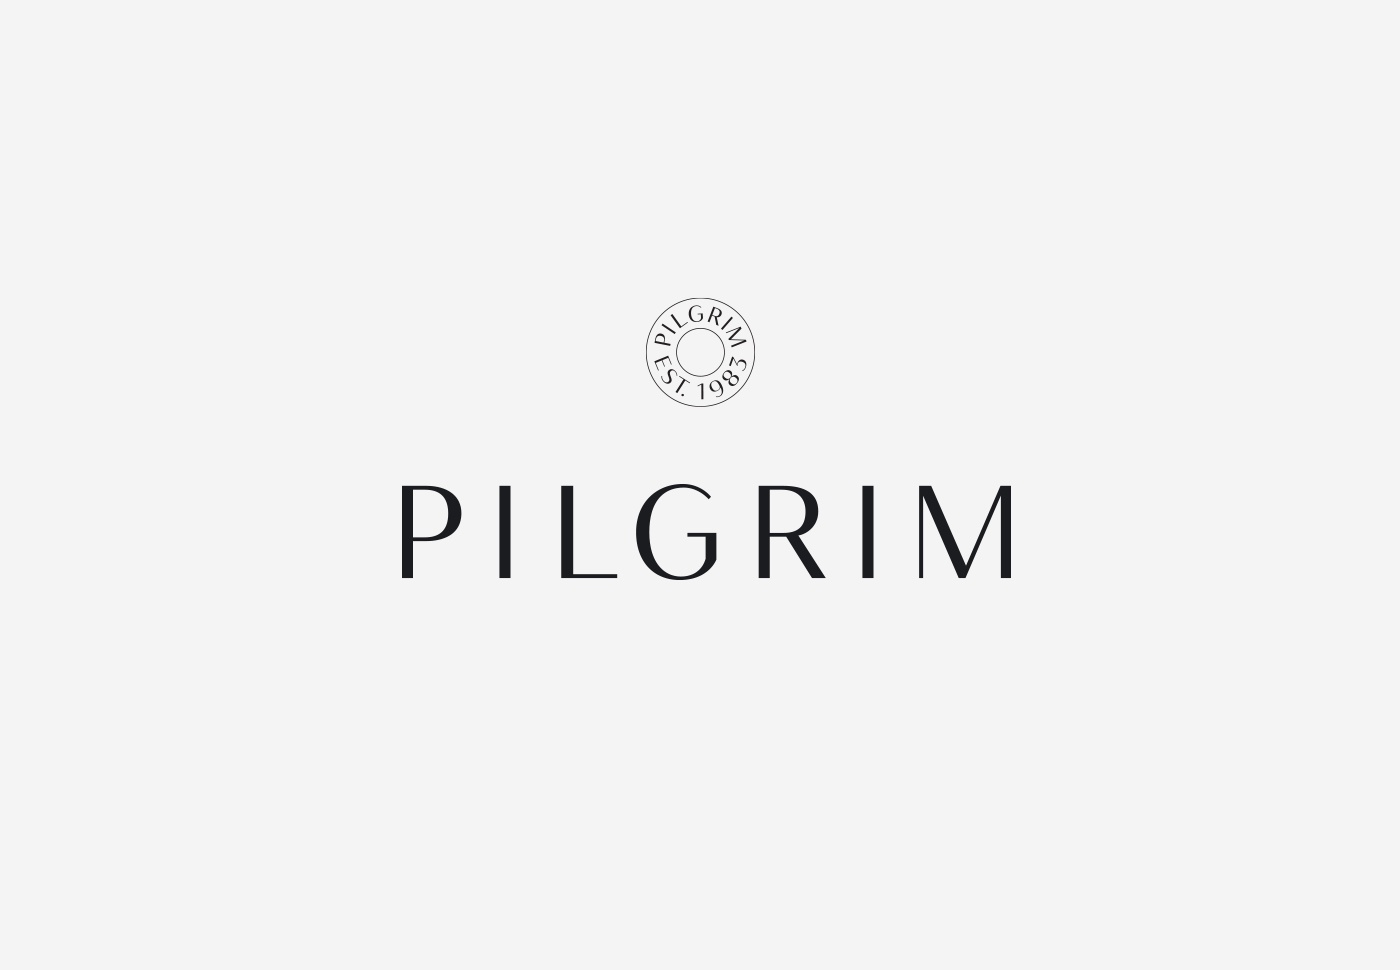 Pilgrim – Visual identity